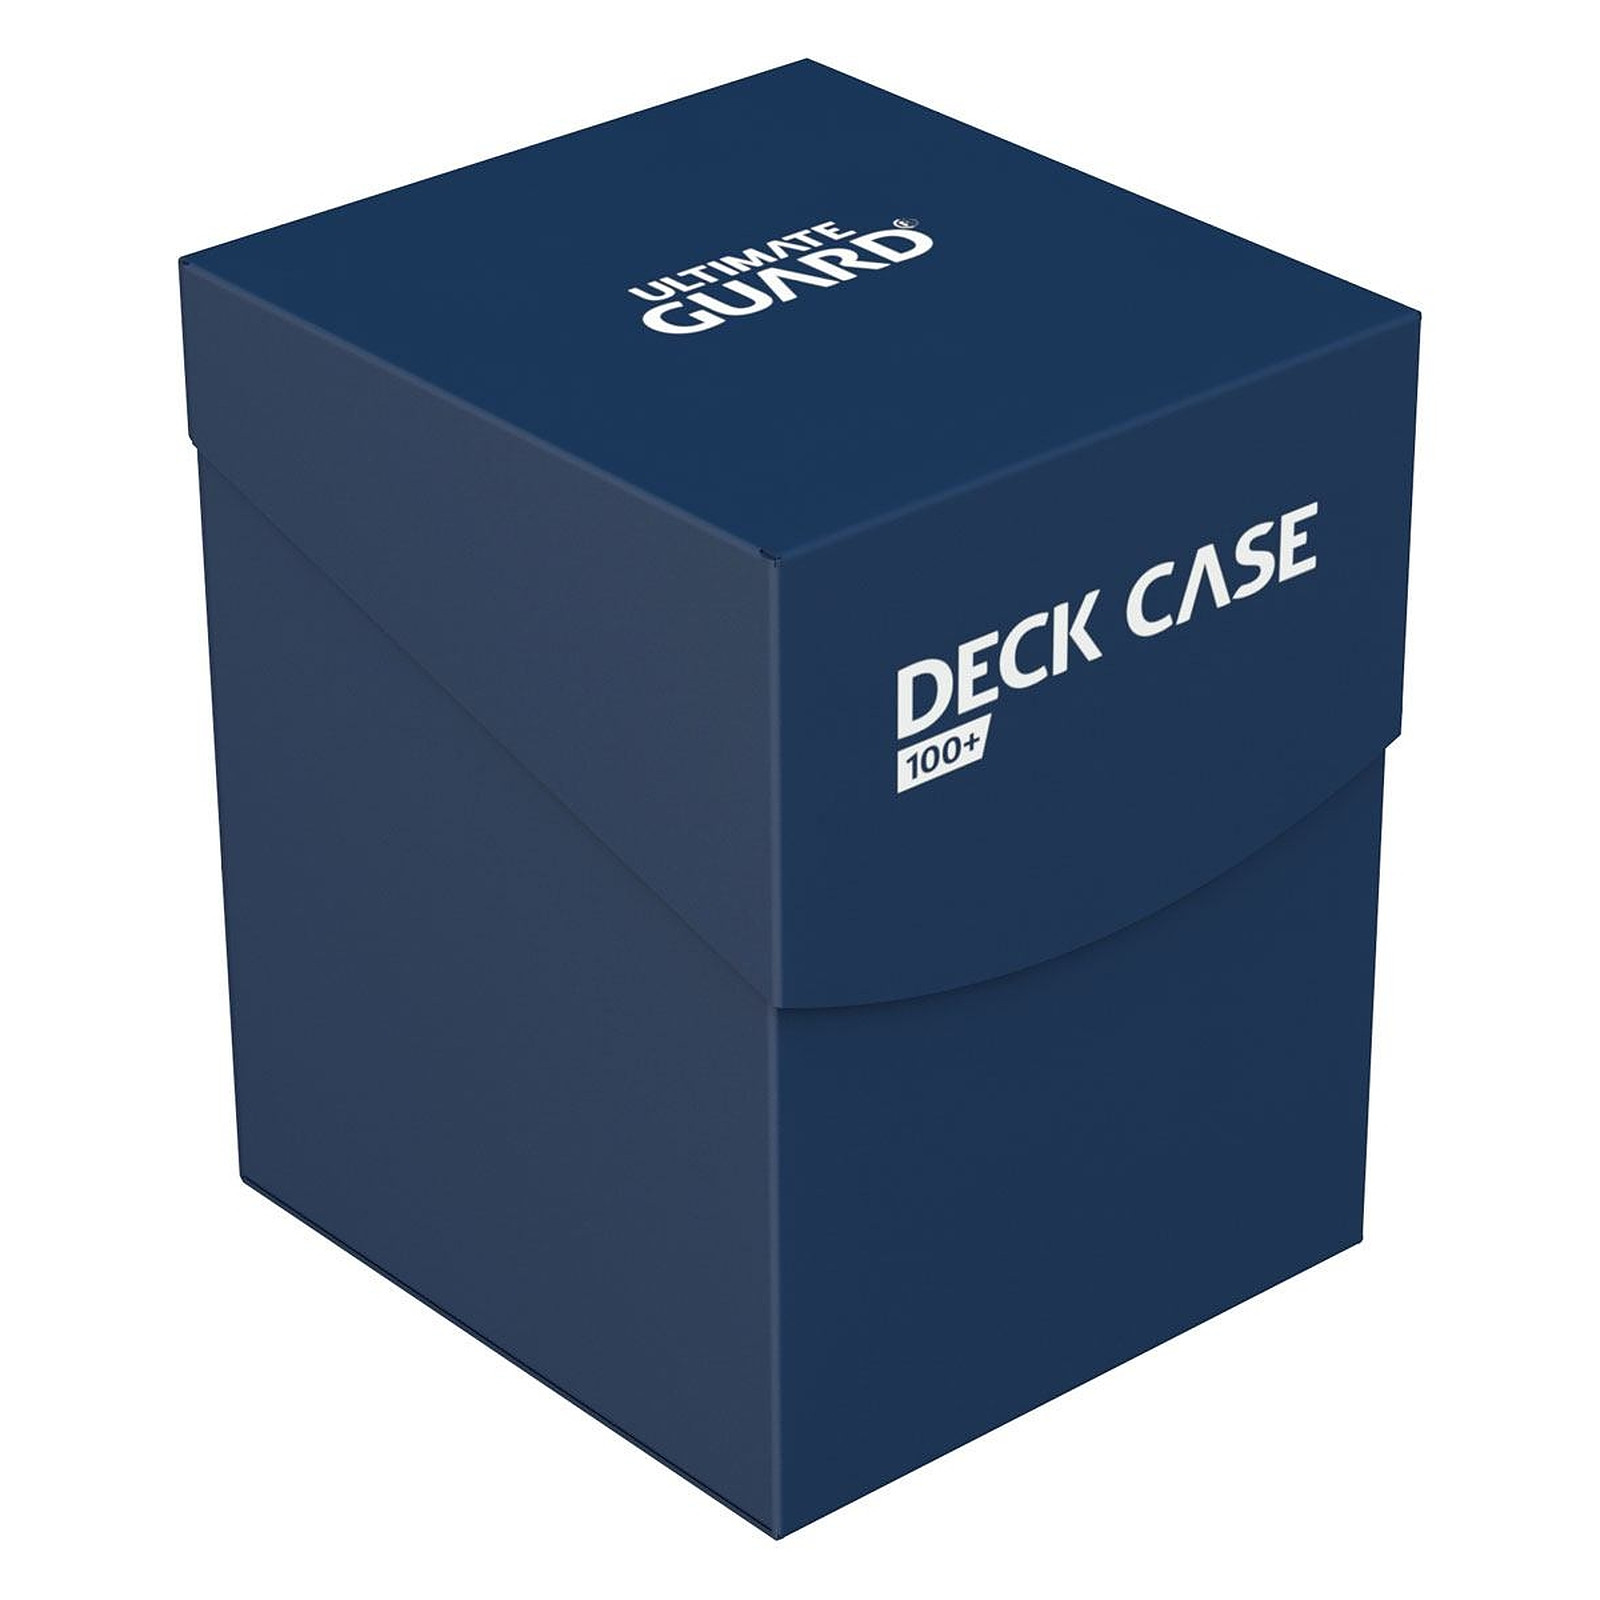 Ultimate Guard - Boite pour cartes Deck Case 100+ taille standard Bleu - Accessoire jeux Ultimate Guard